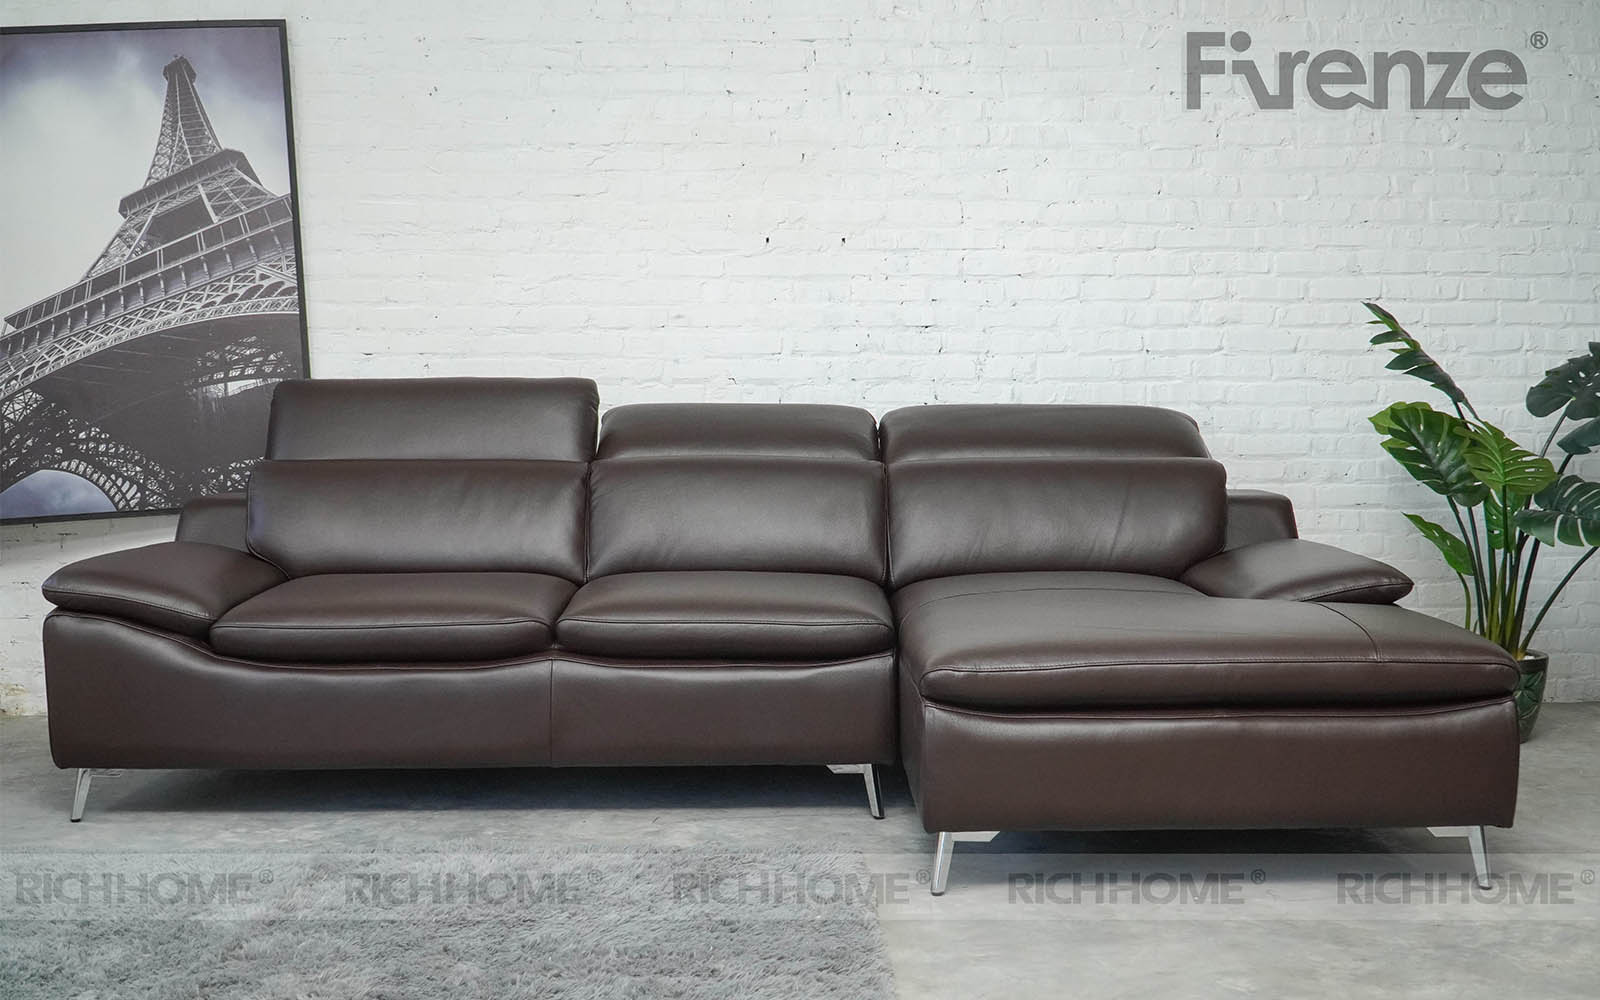 Chia sẻ cách nhận biết ghế sofa cao cấp nhập khẩu chuẩn về chất lượng - Ảnh 3